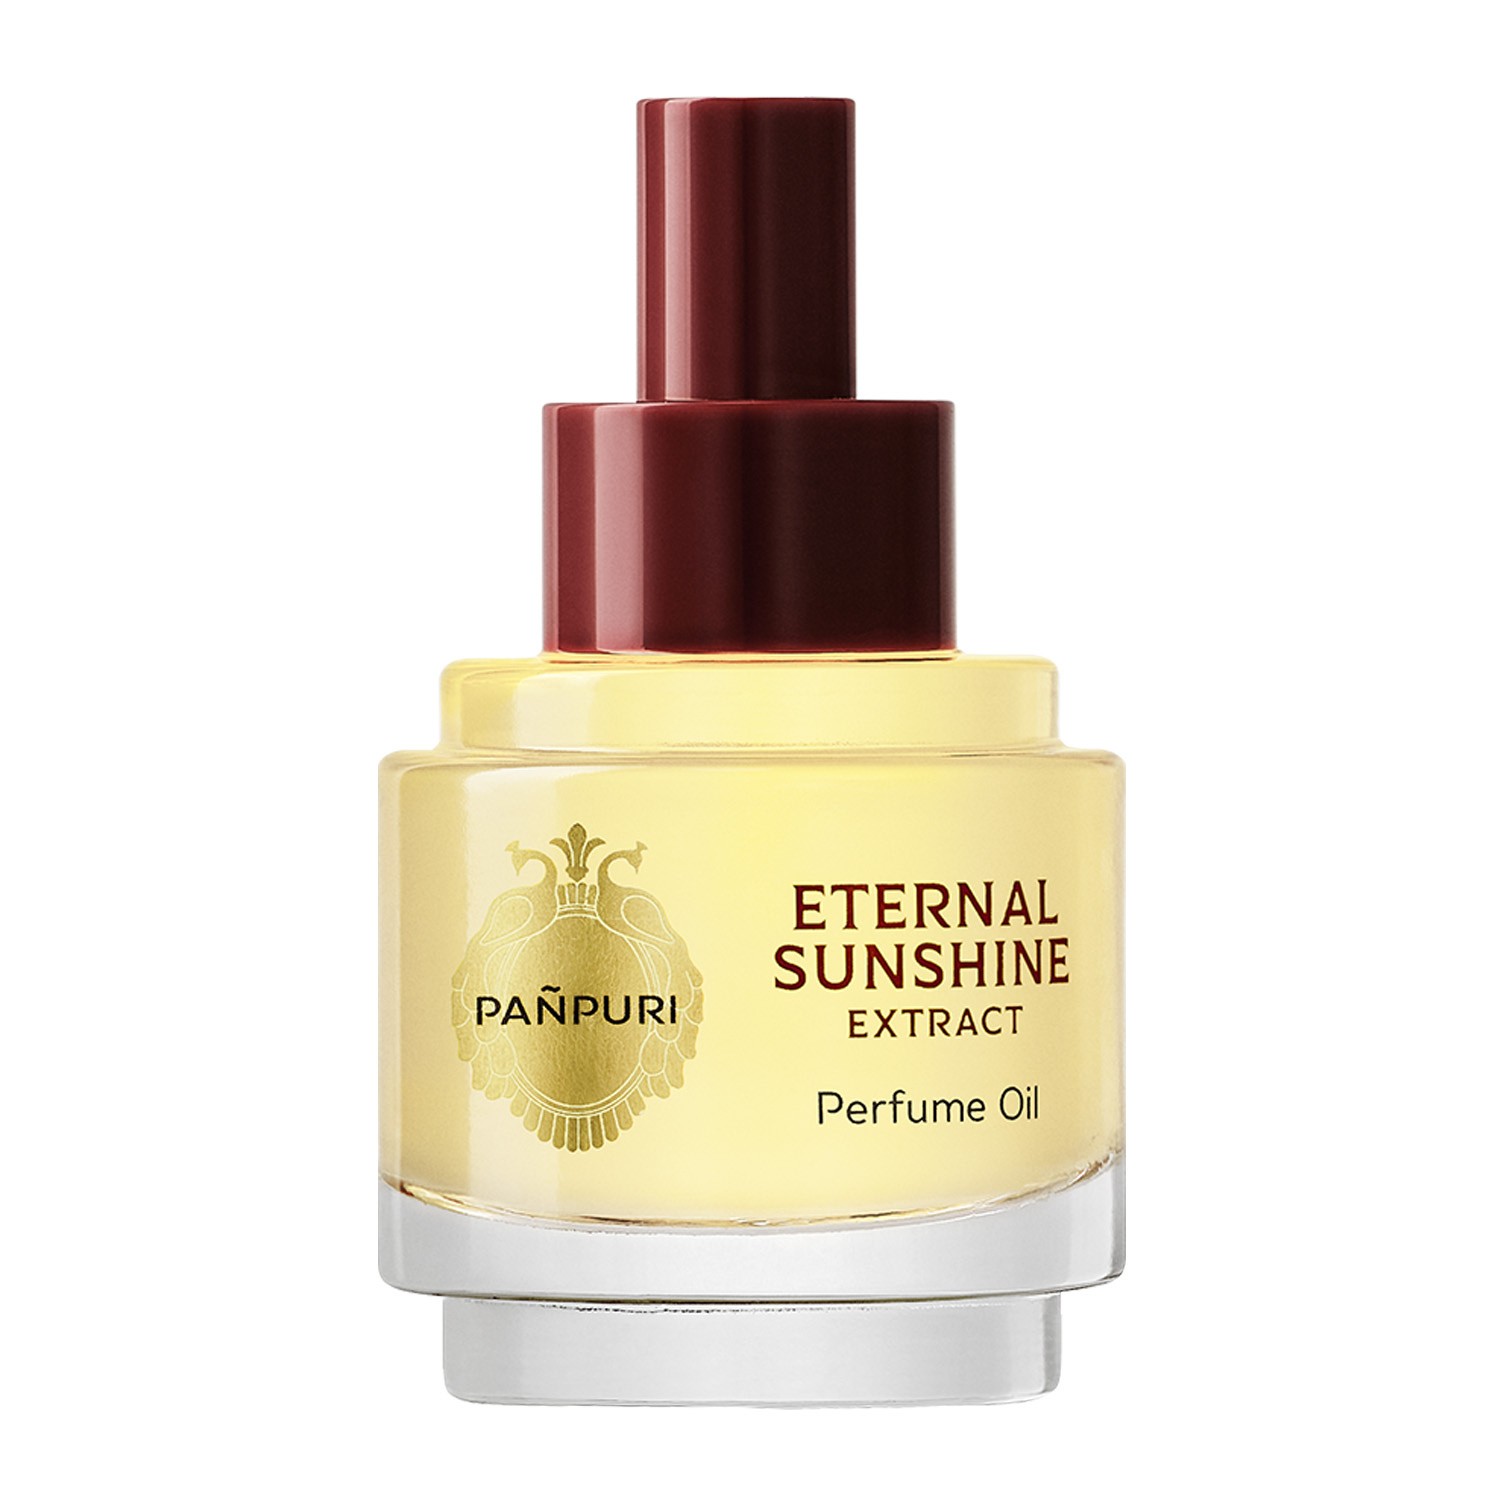 EXTRACT Perfume Oil